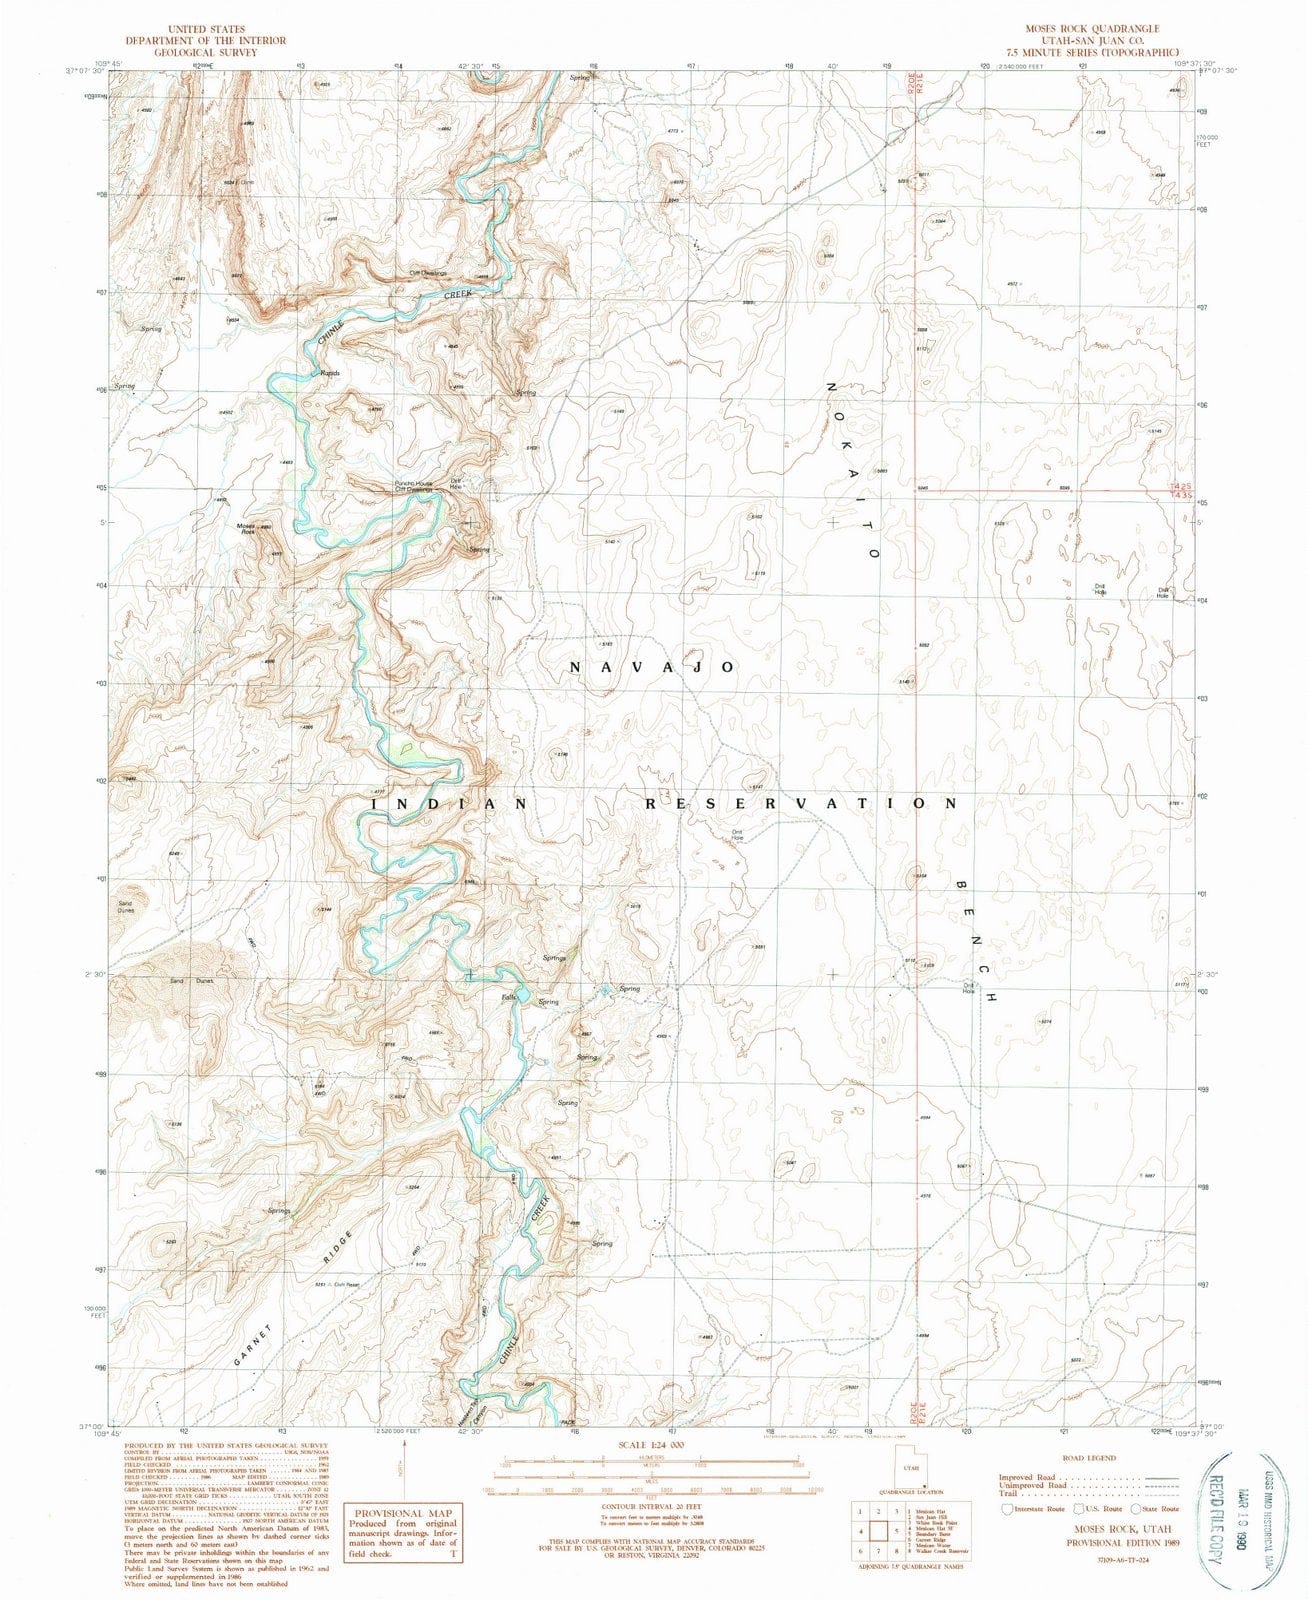 1989 Moses Rock, UT - Utah - USGS Topographic Map